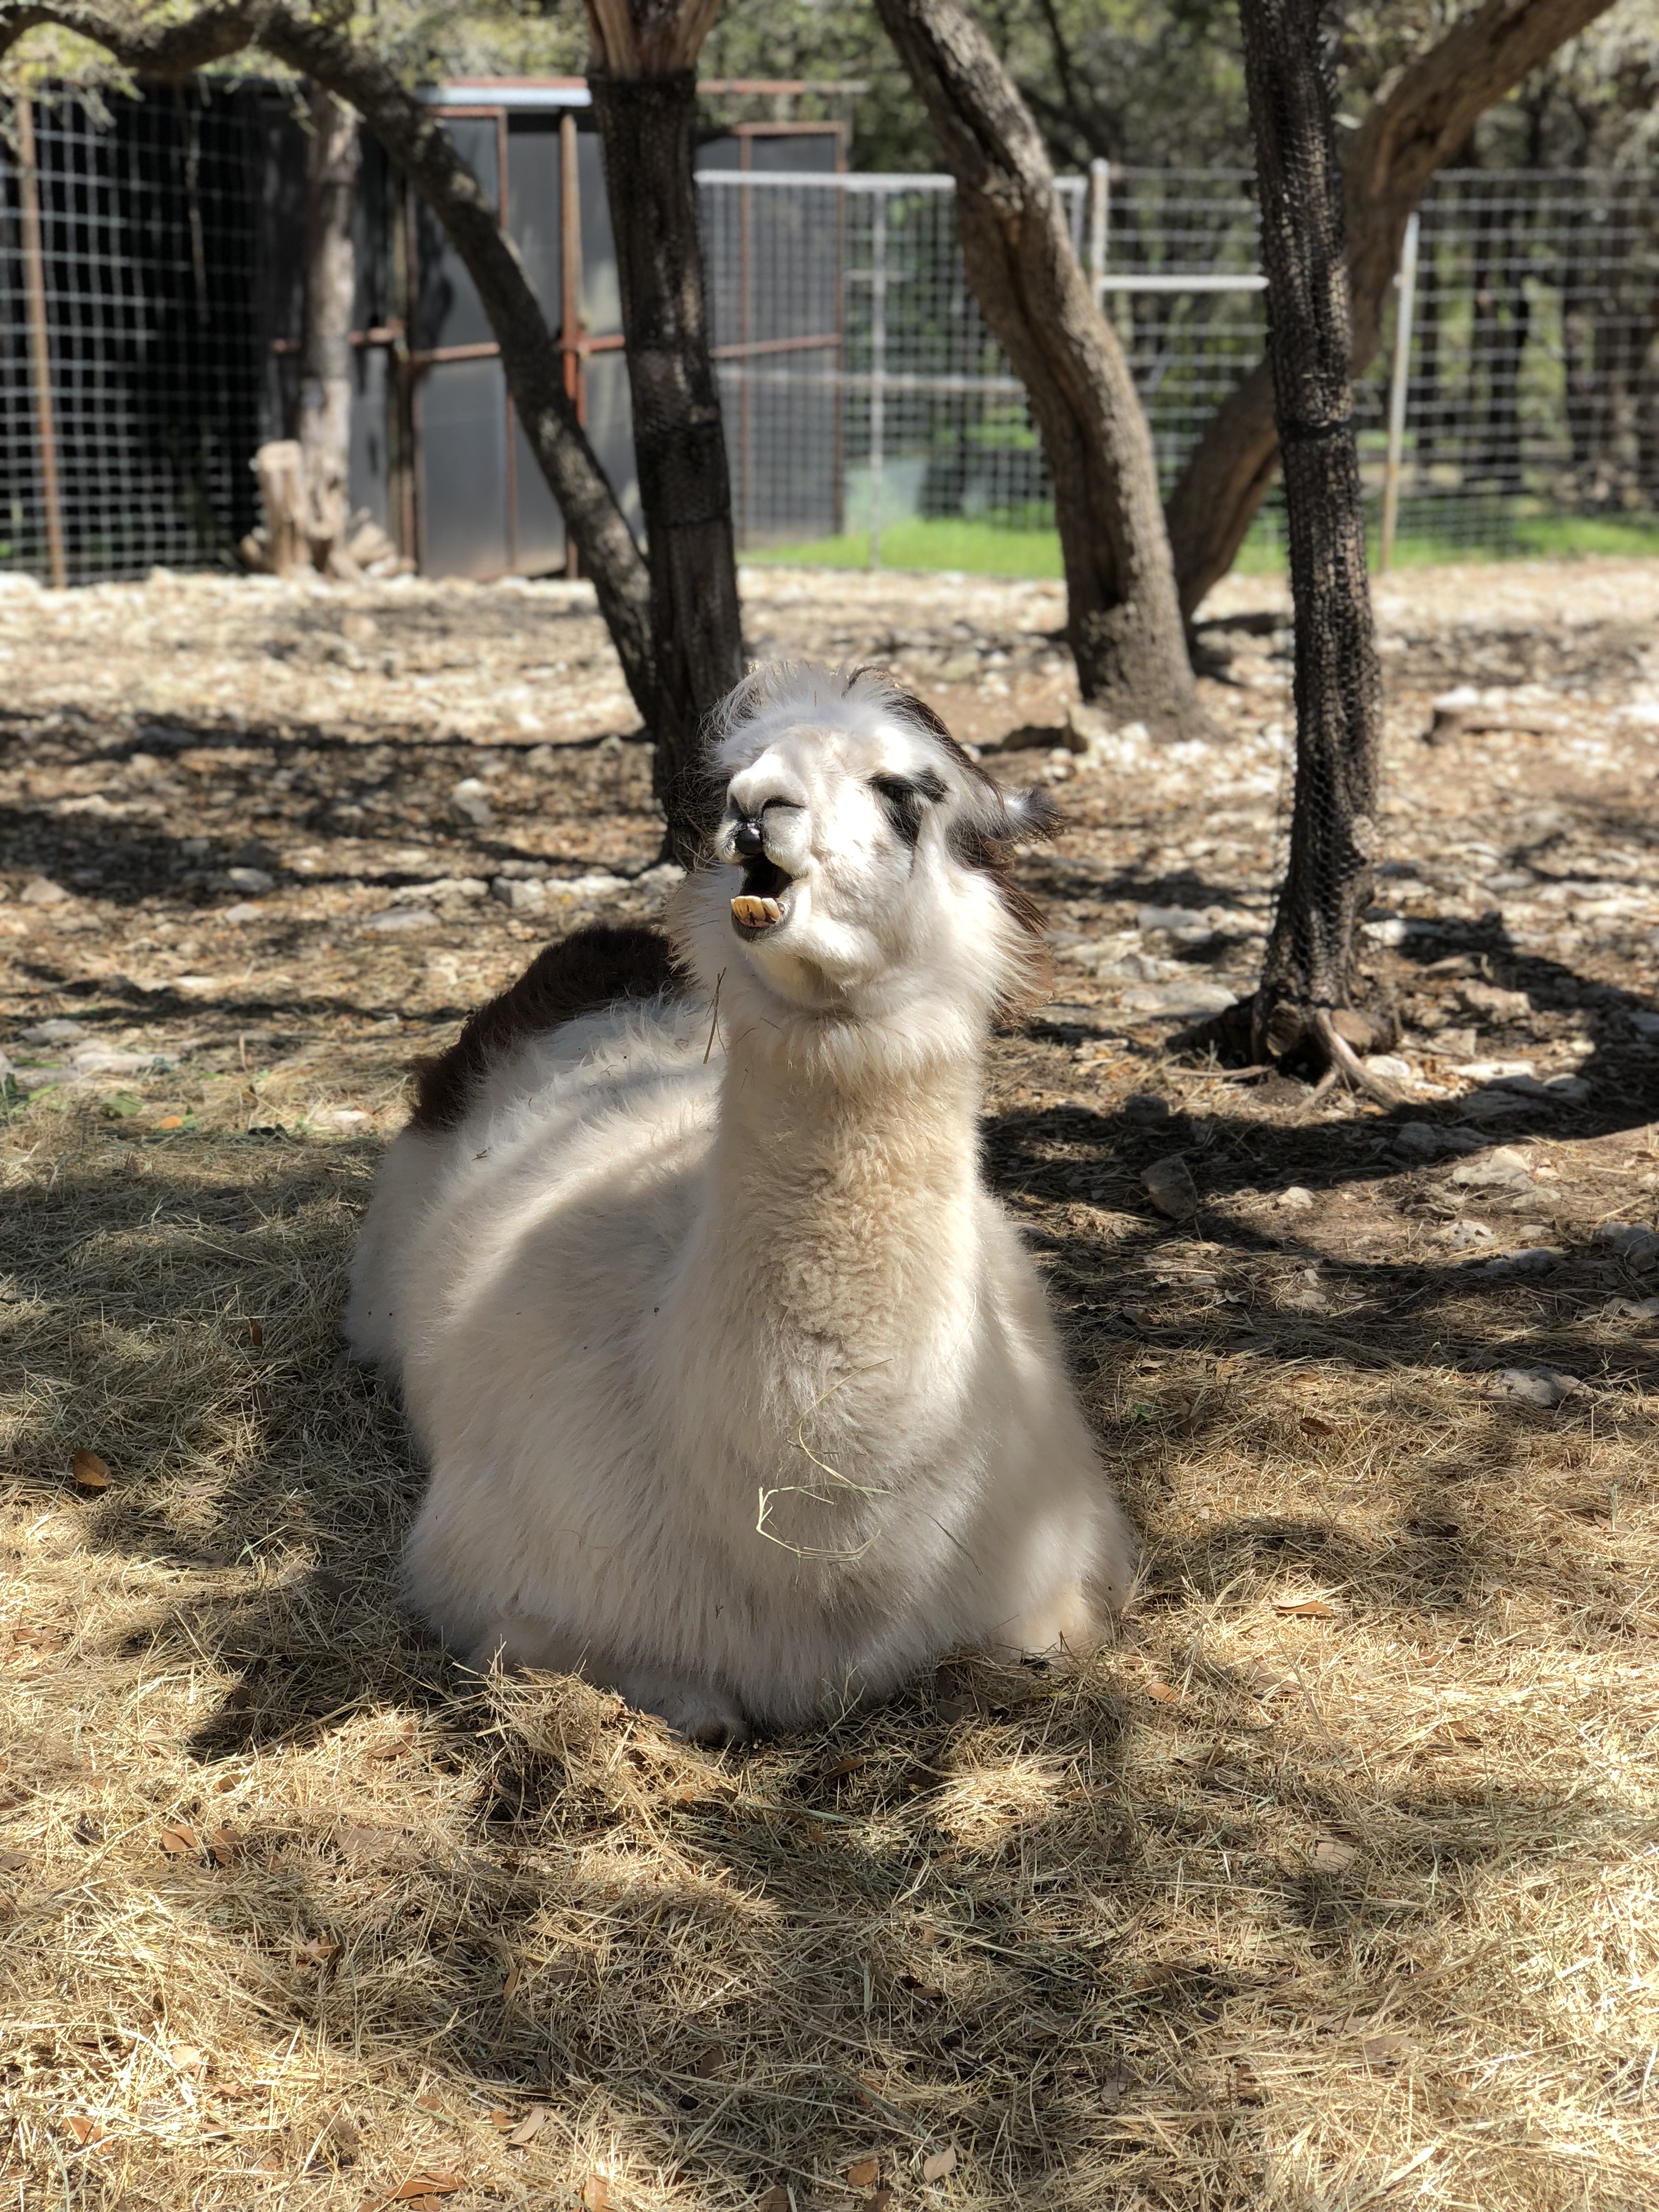 llama at the Austin Zoo